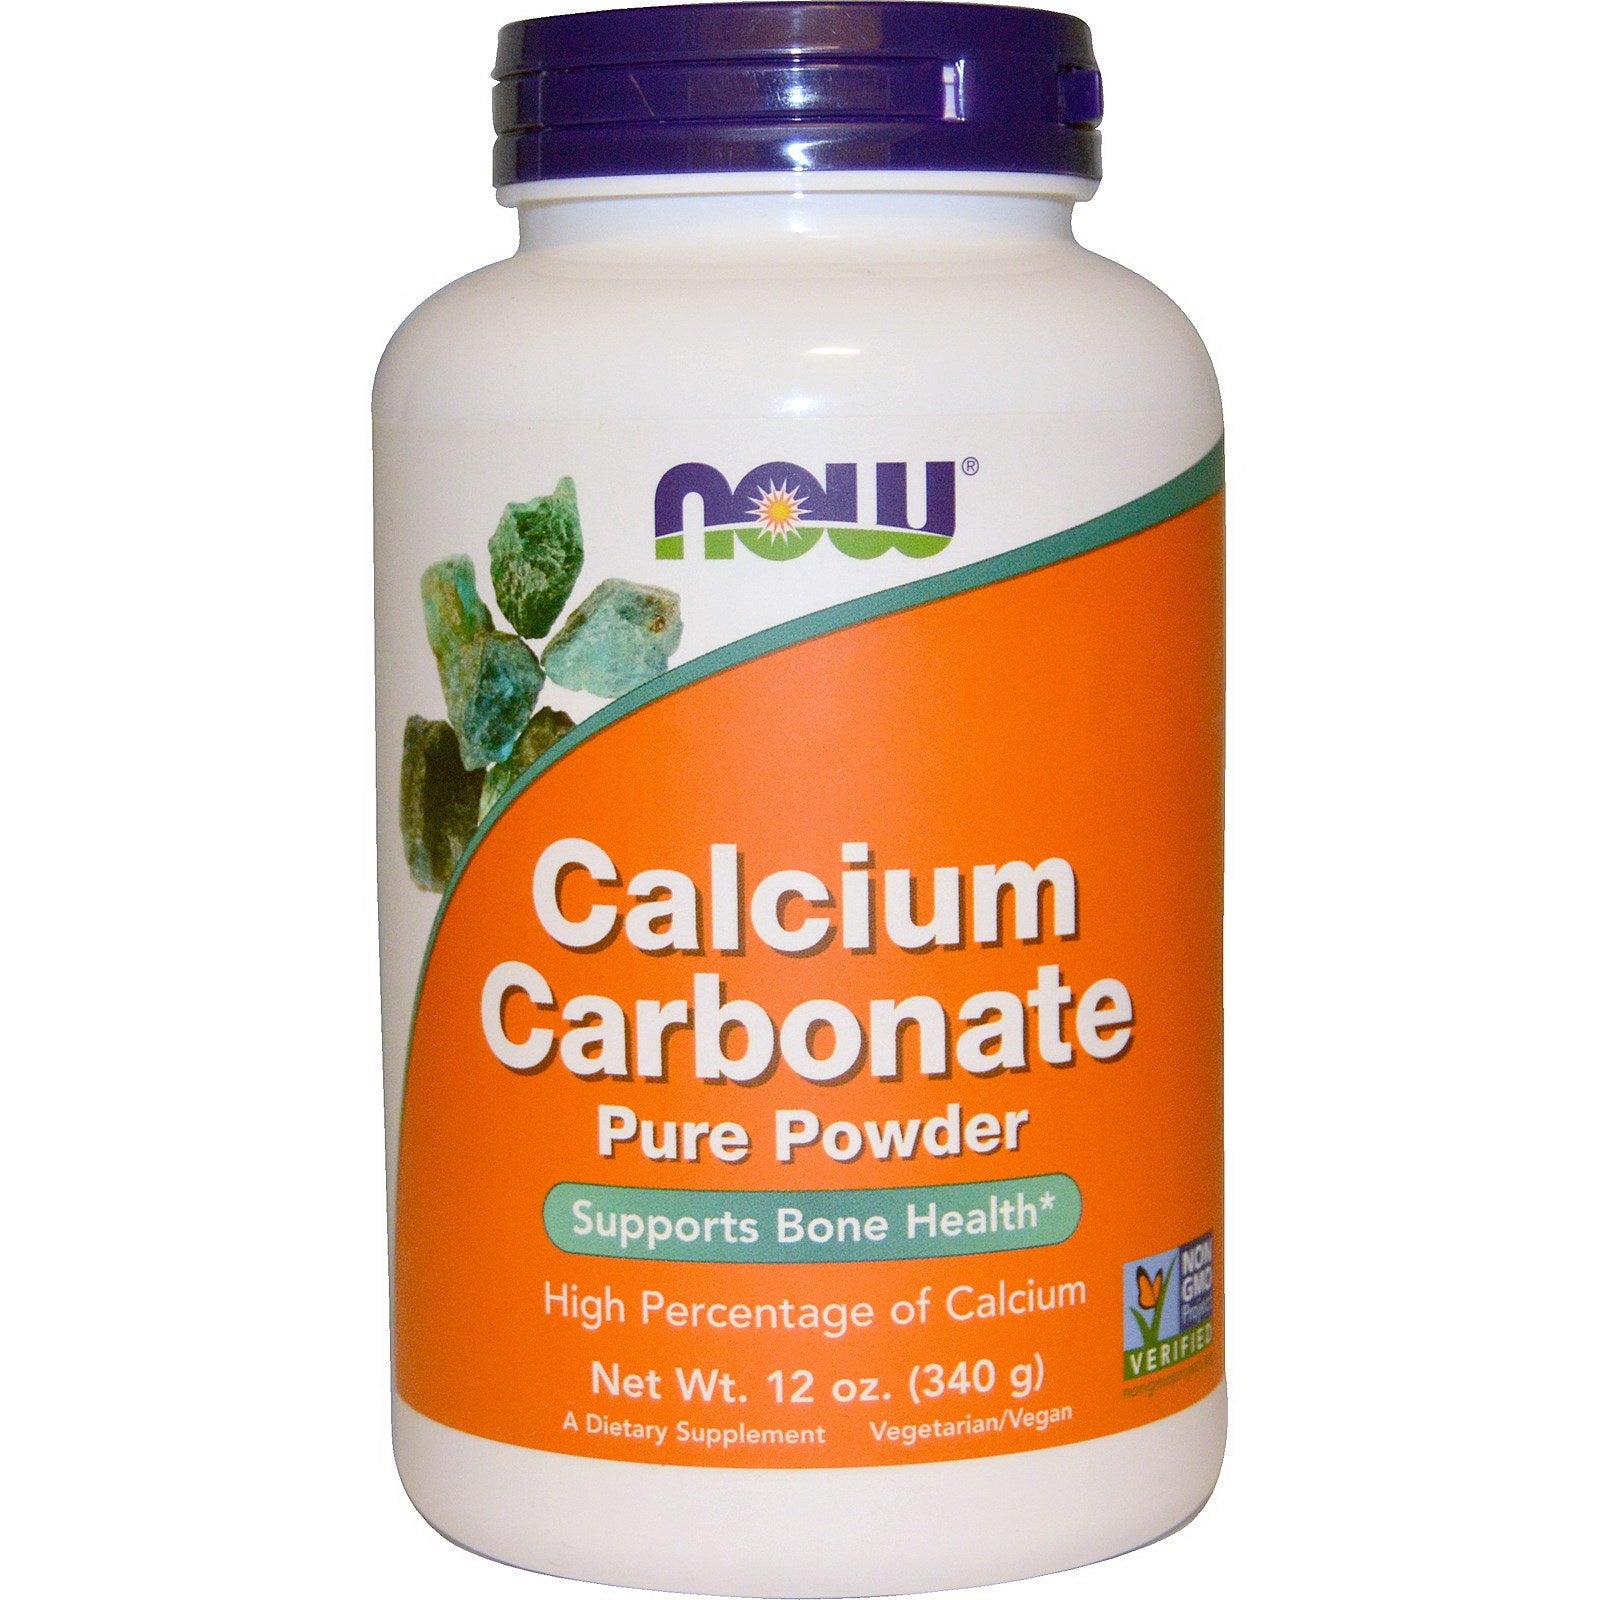 Calcium Carbonate Pwd 340g